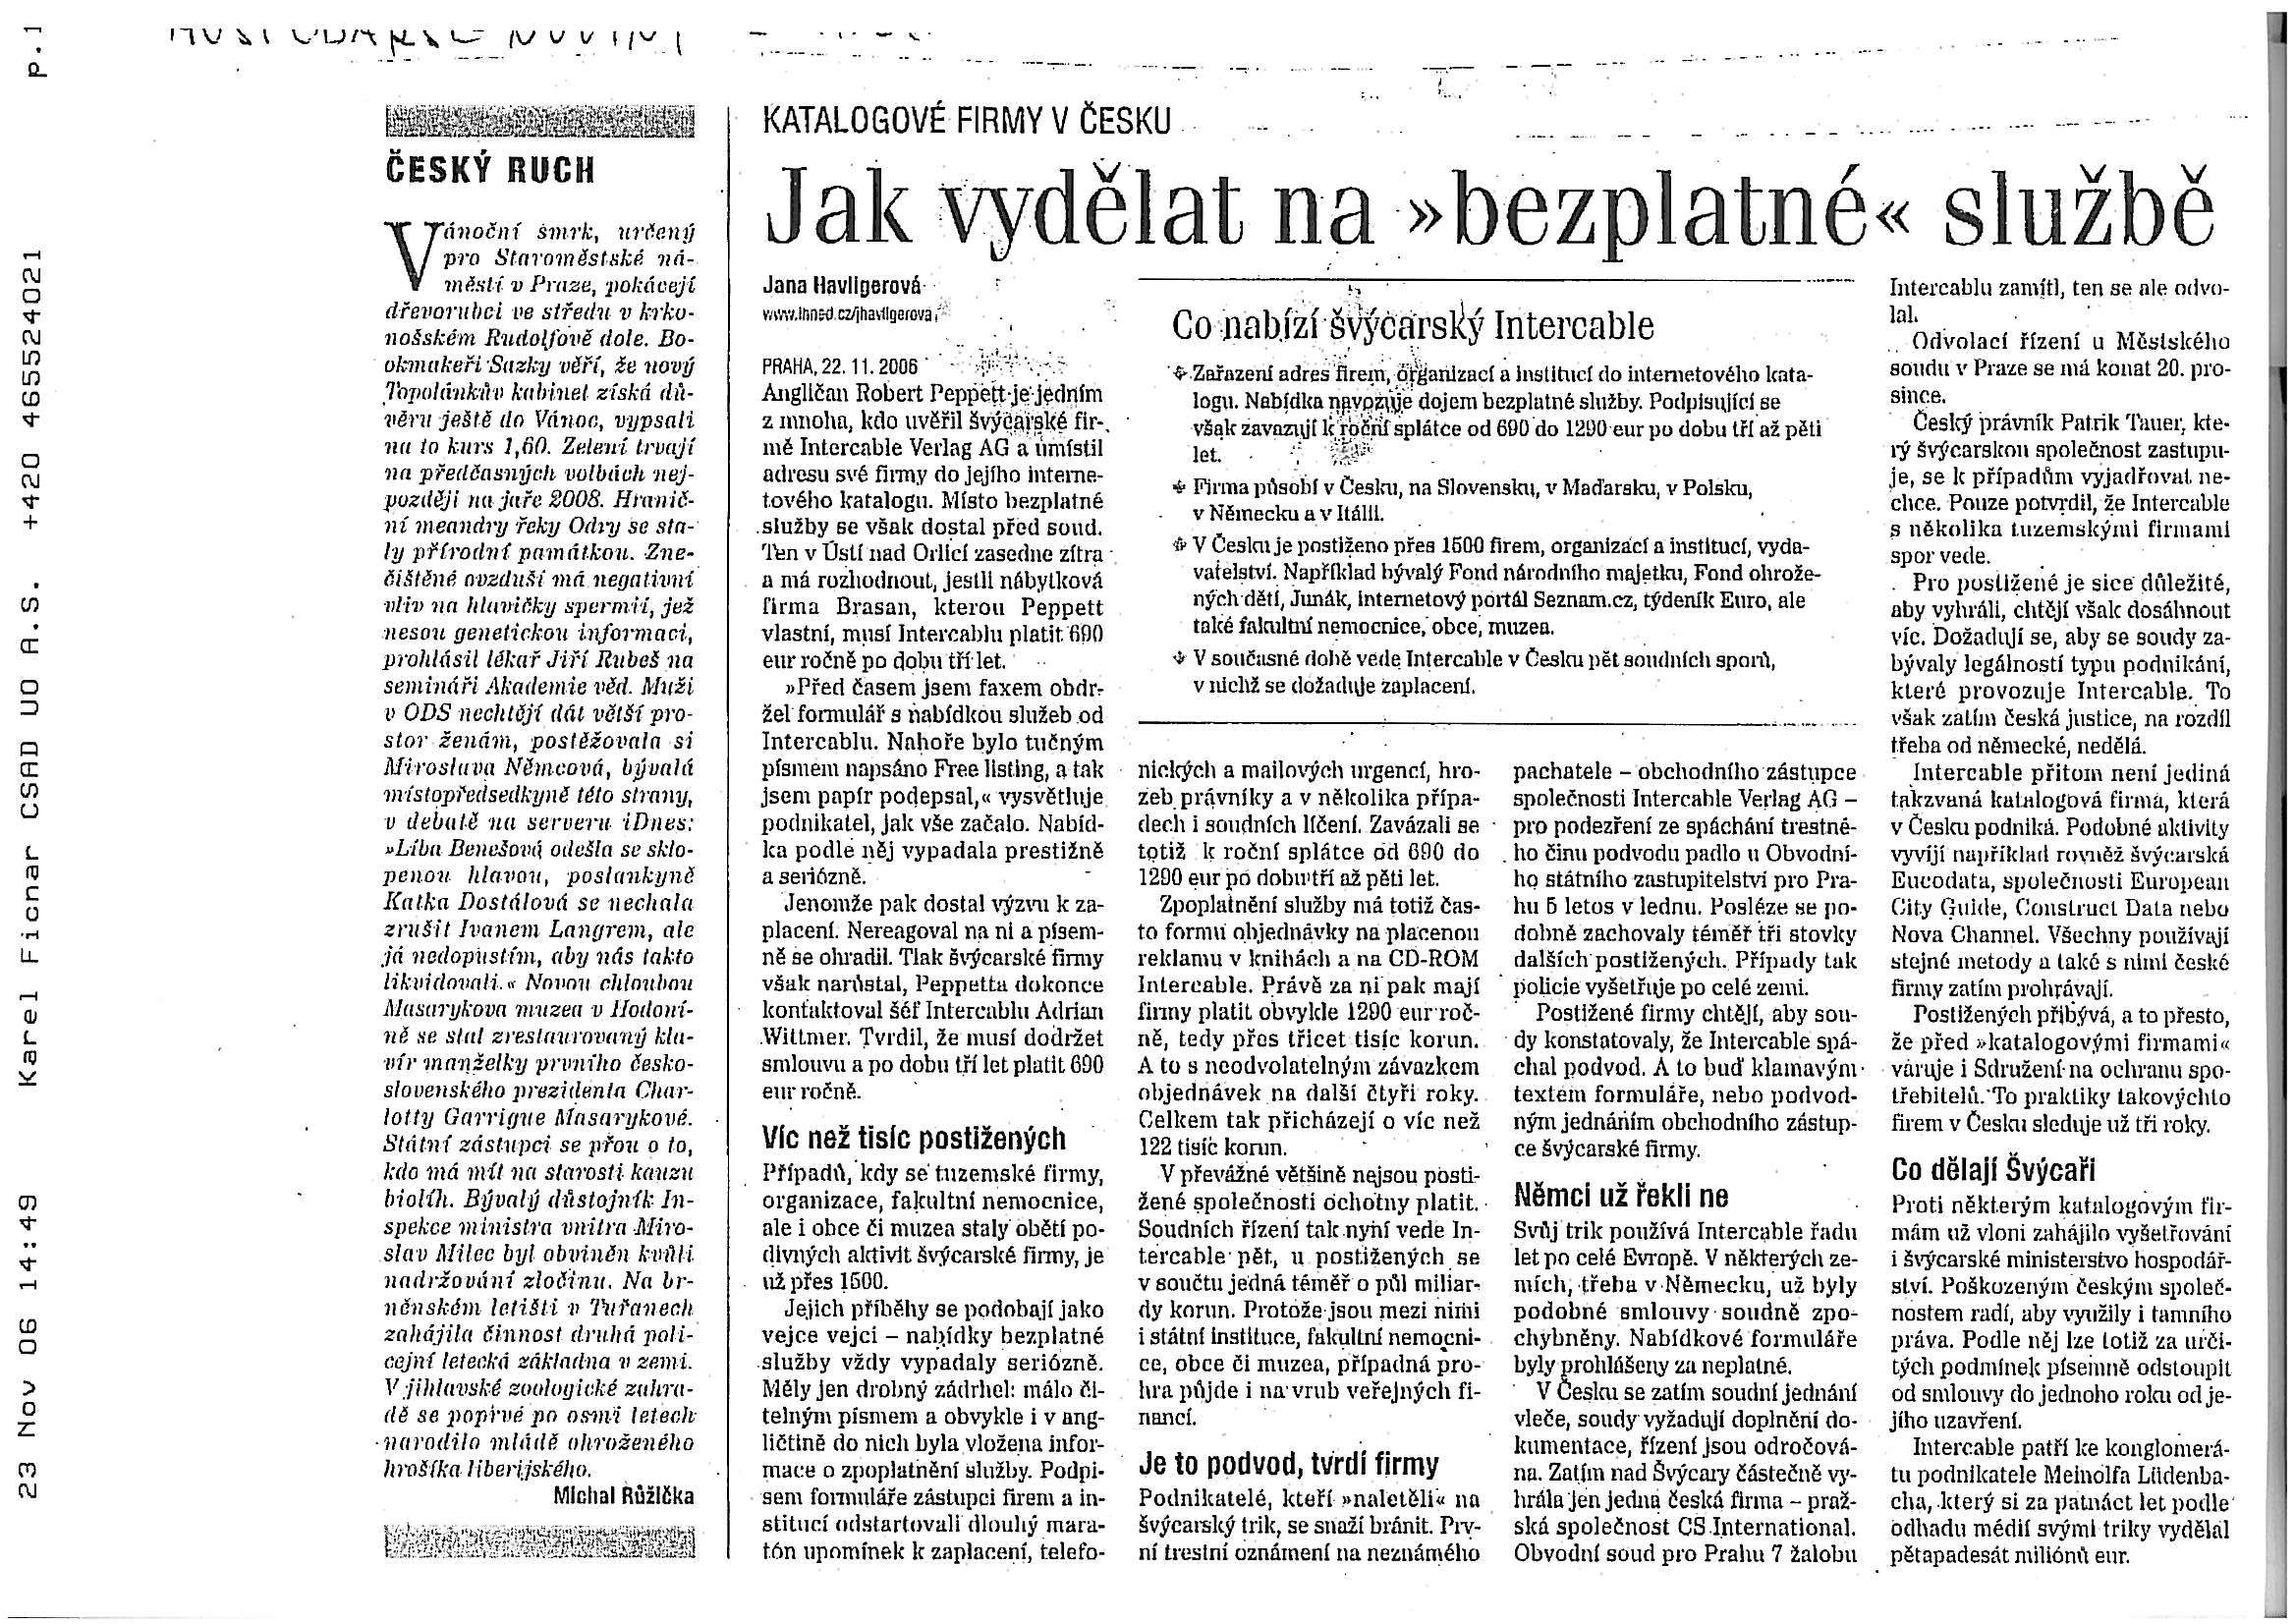 Hospodářské noviny 22.11.2006.jpg